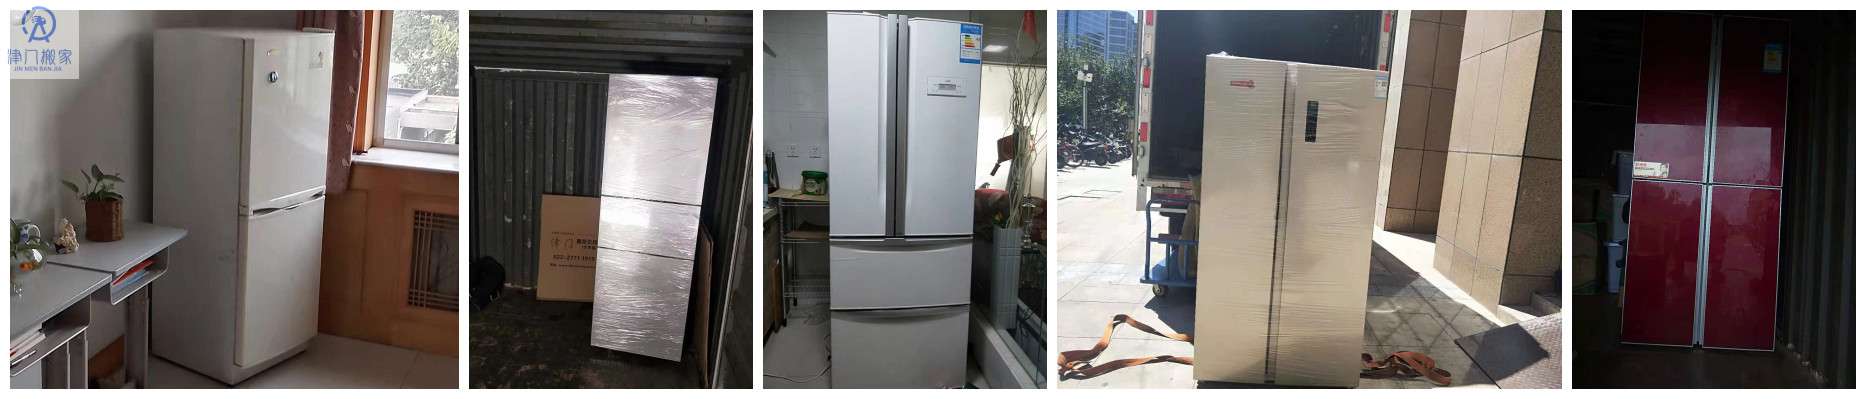 天津搬家公司搬运冰箱收费标准